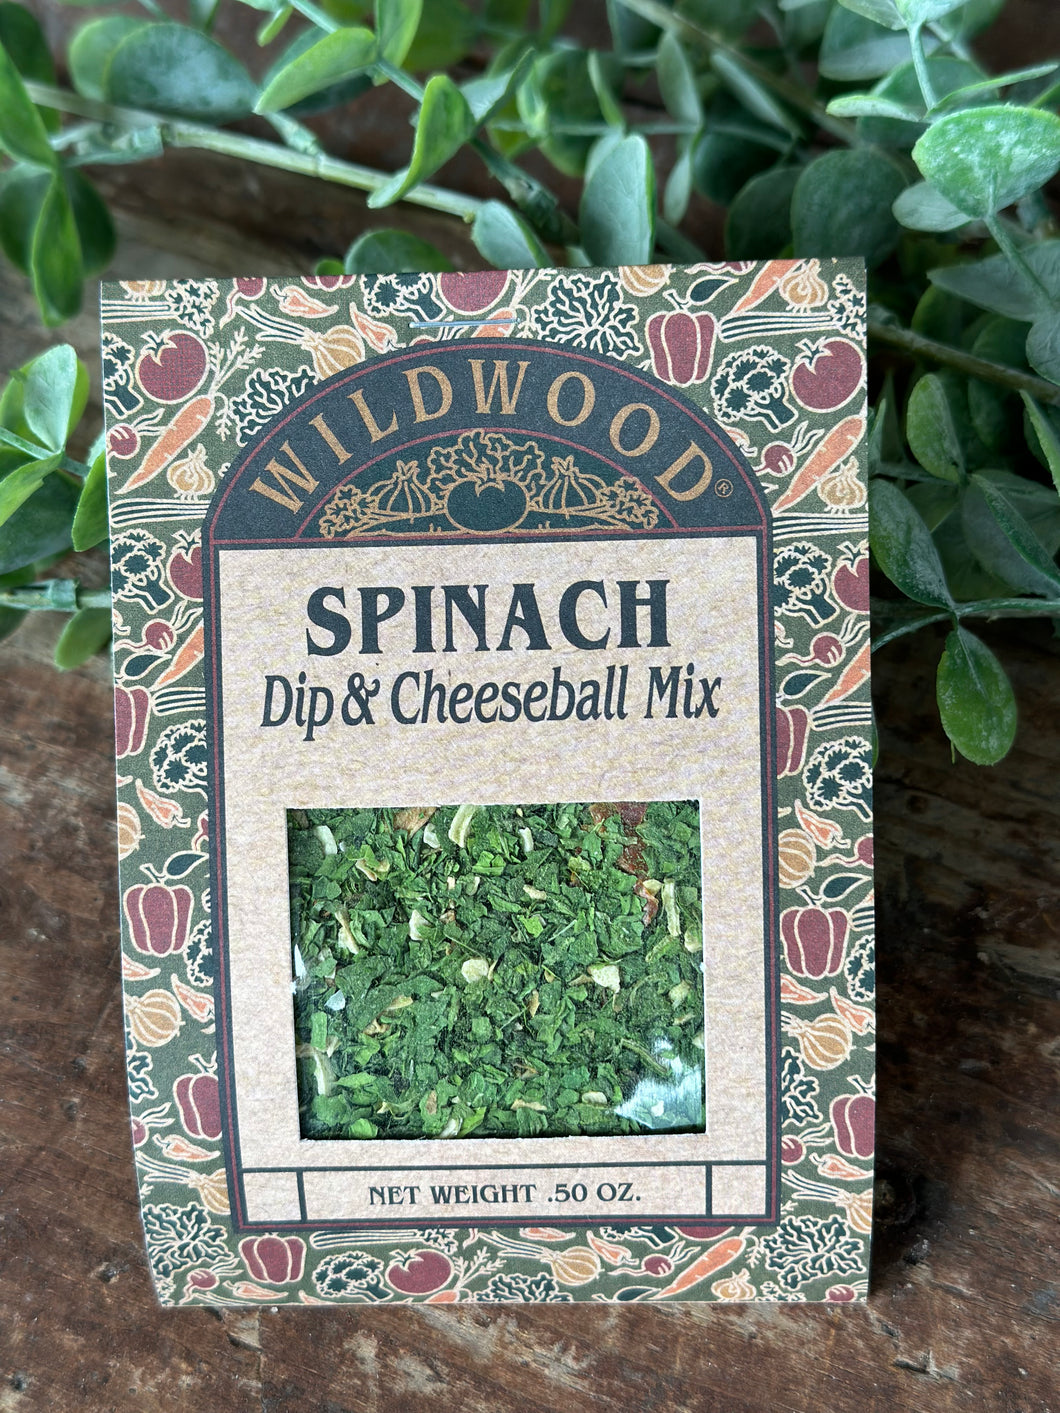 Wildwood Spinach Dip Mix